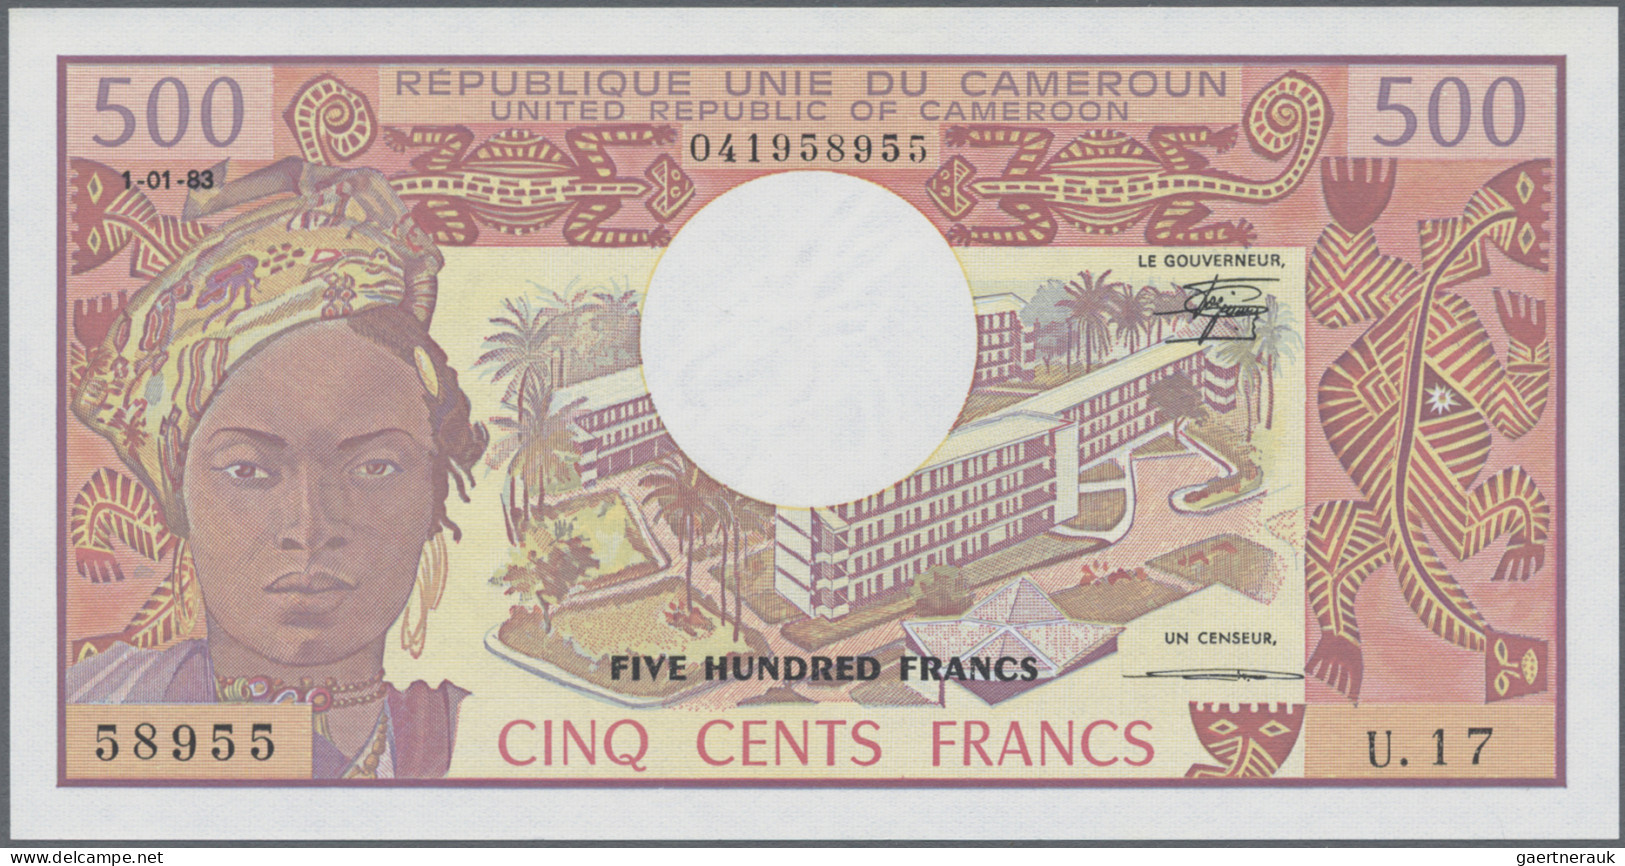 Cameroon: Banque Des États De L'Afrique Centrale - République Unie Du Cameroun, - Cameroun